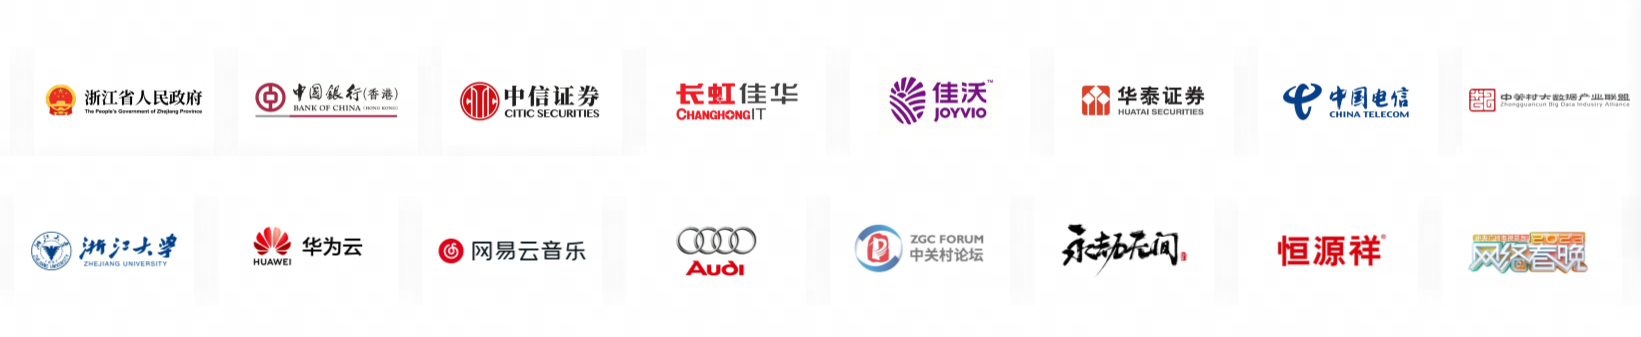 图片展示了多个品牌的标志，包括银行、汽车、电子和其他不同领域的企业徽标。